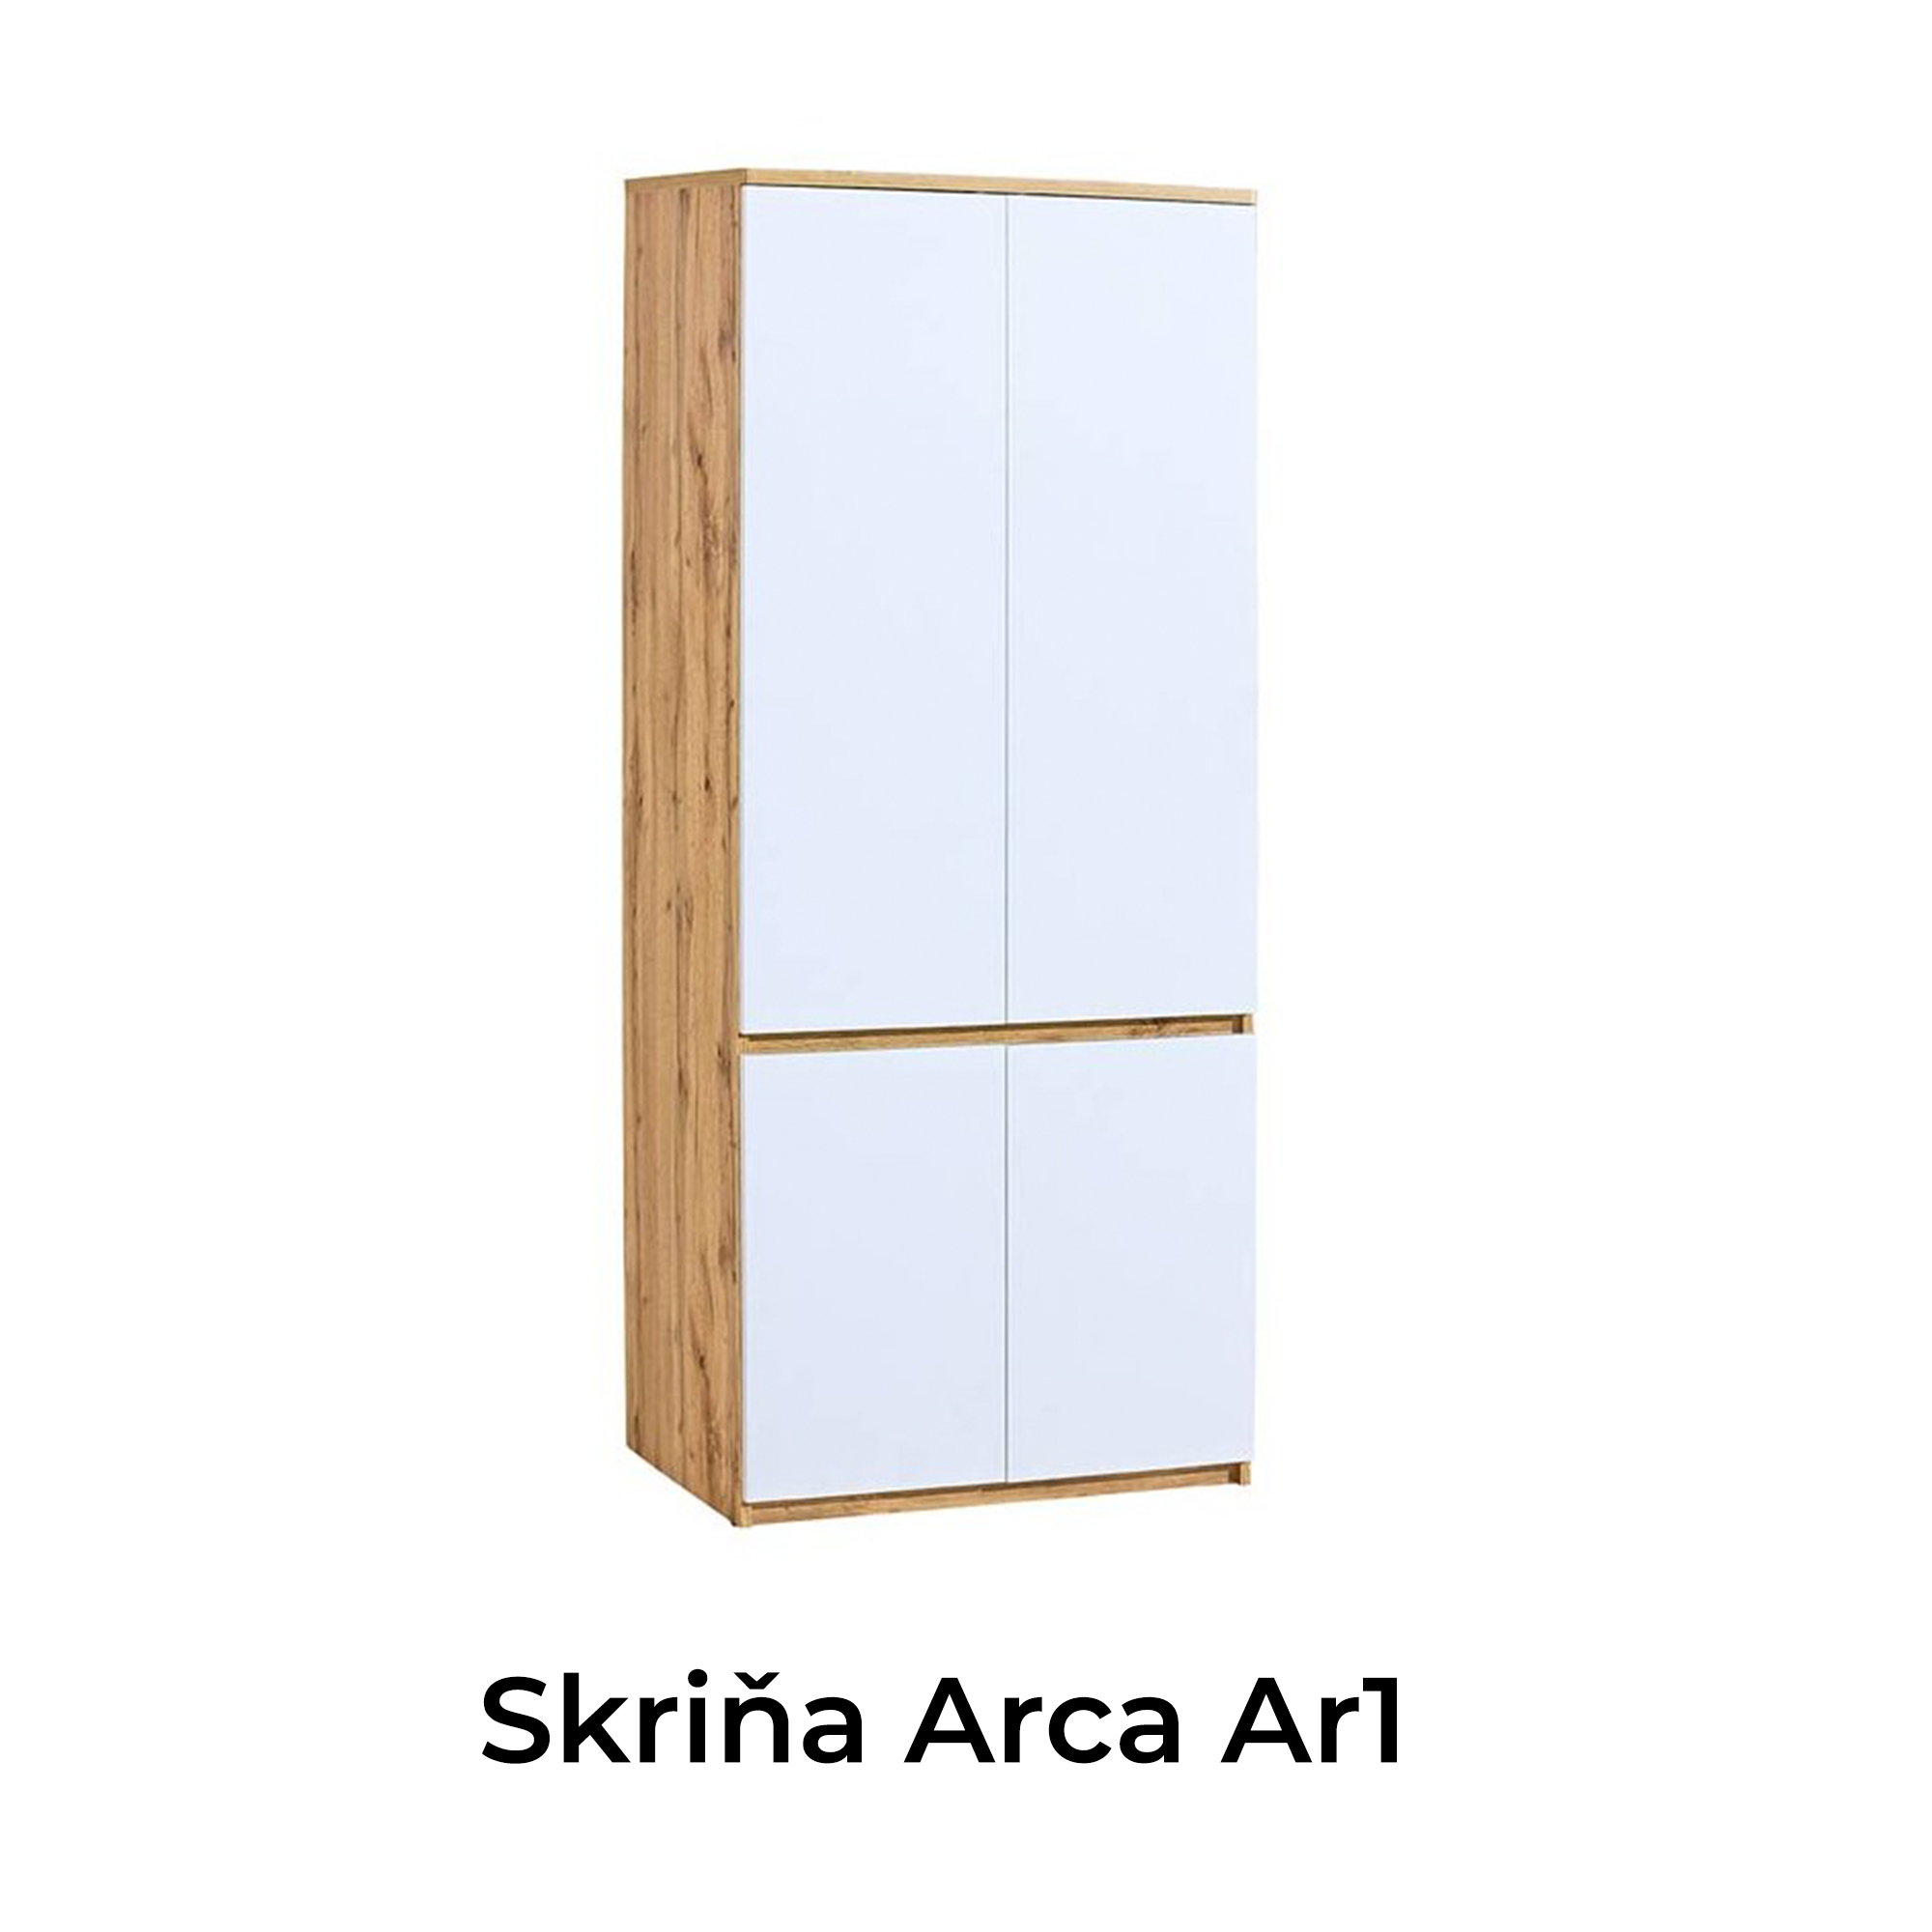 Skriňa Arca Ar1 tvorí súčasť jednoduchej a elegantnej kolekcie ARCA